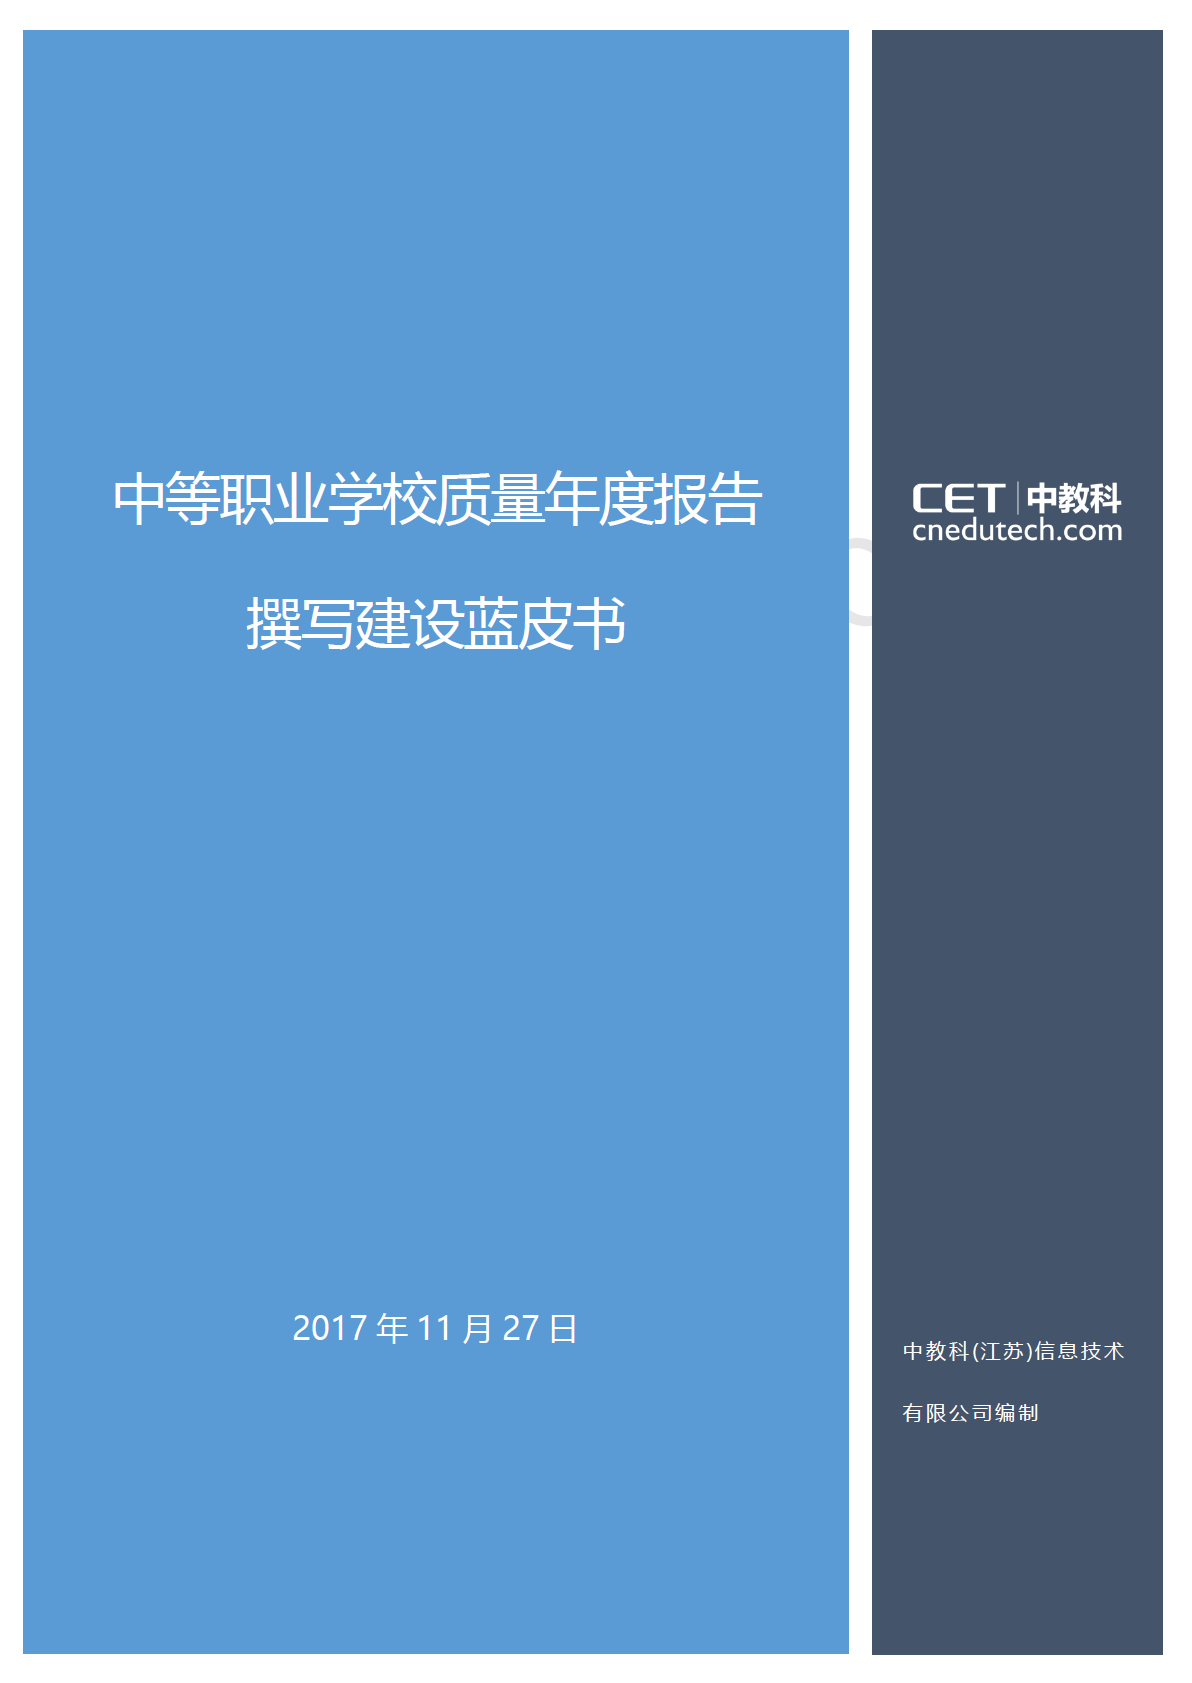 中等职业学校质量年度报告撰写建设蓝皮书发布